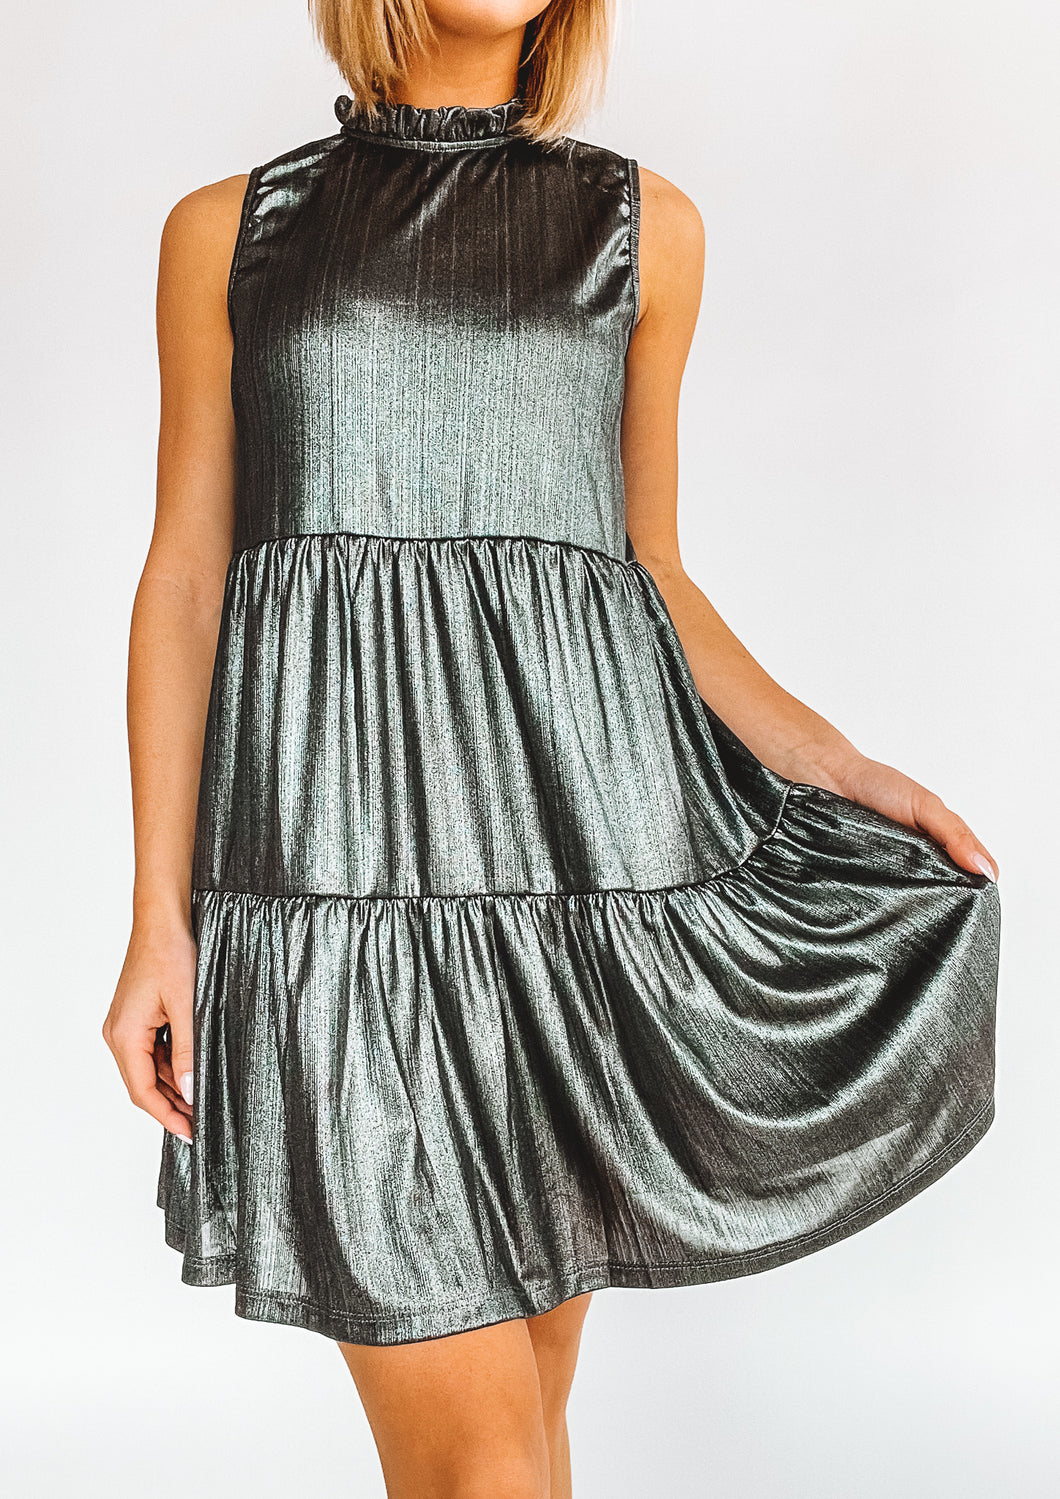 Tierly Beloved Metallic Tiered Dress